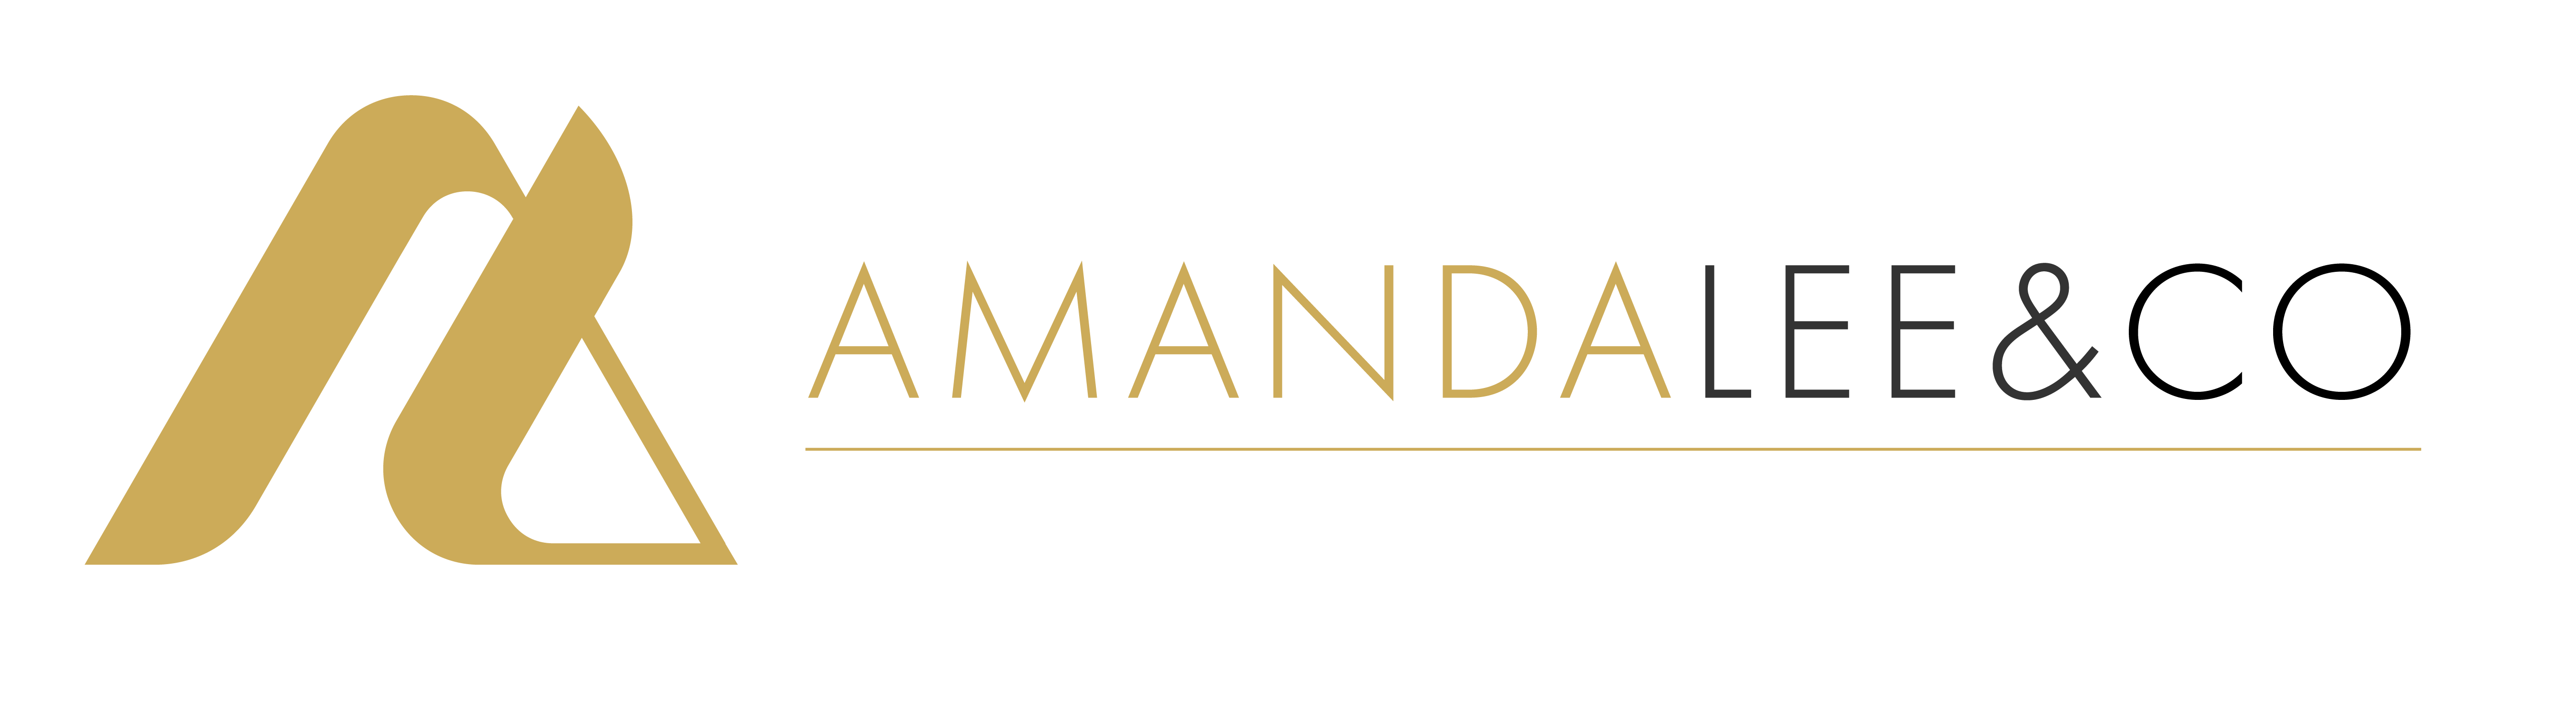 Amanda Lee & Co.